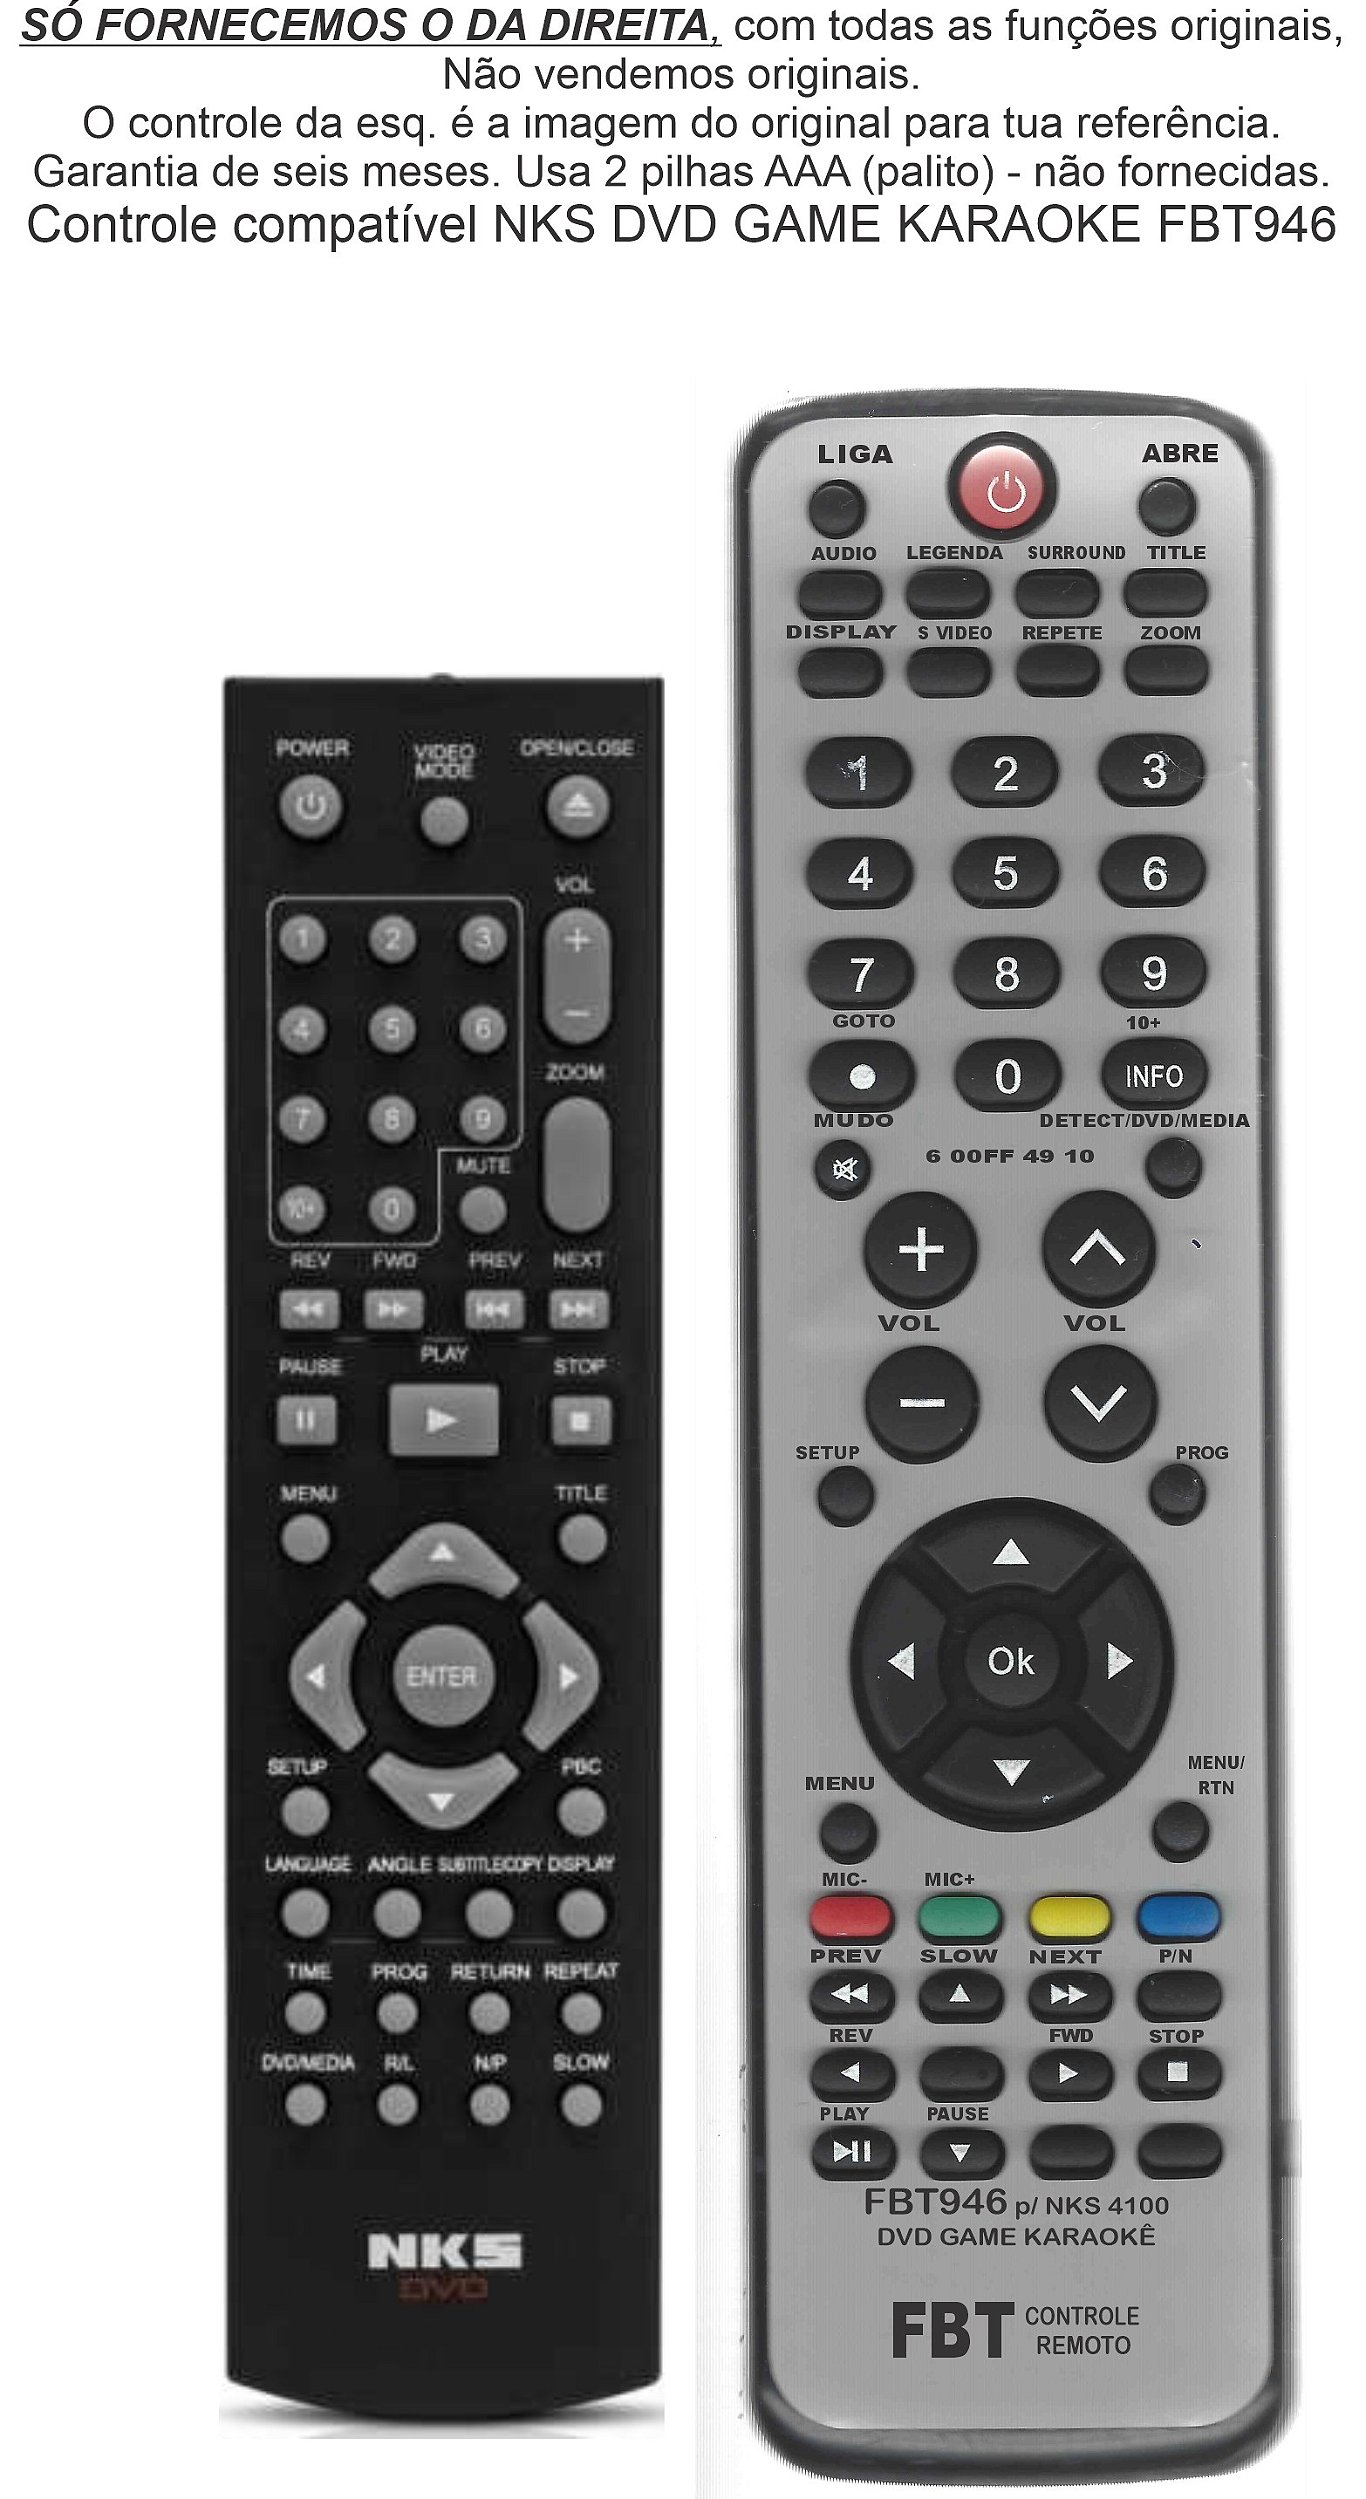 Controle Remoto Compatível DVD Samsung Karaokê P250K 0011E FBT355